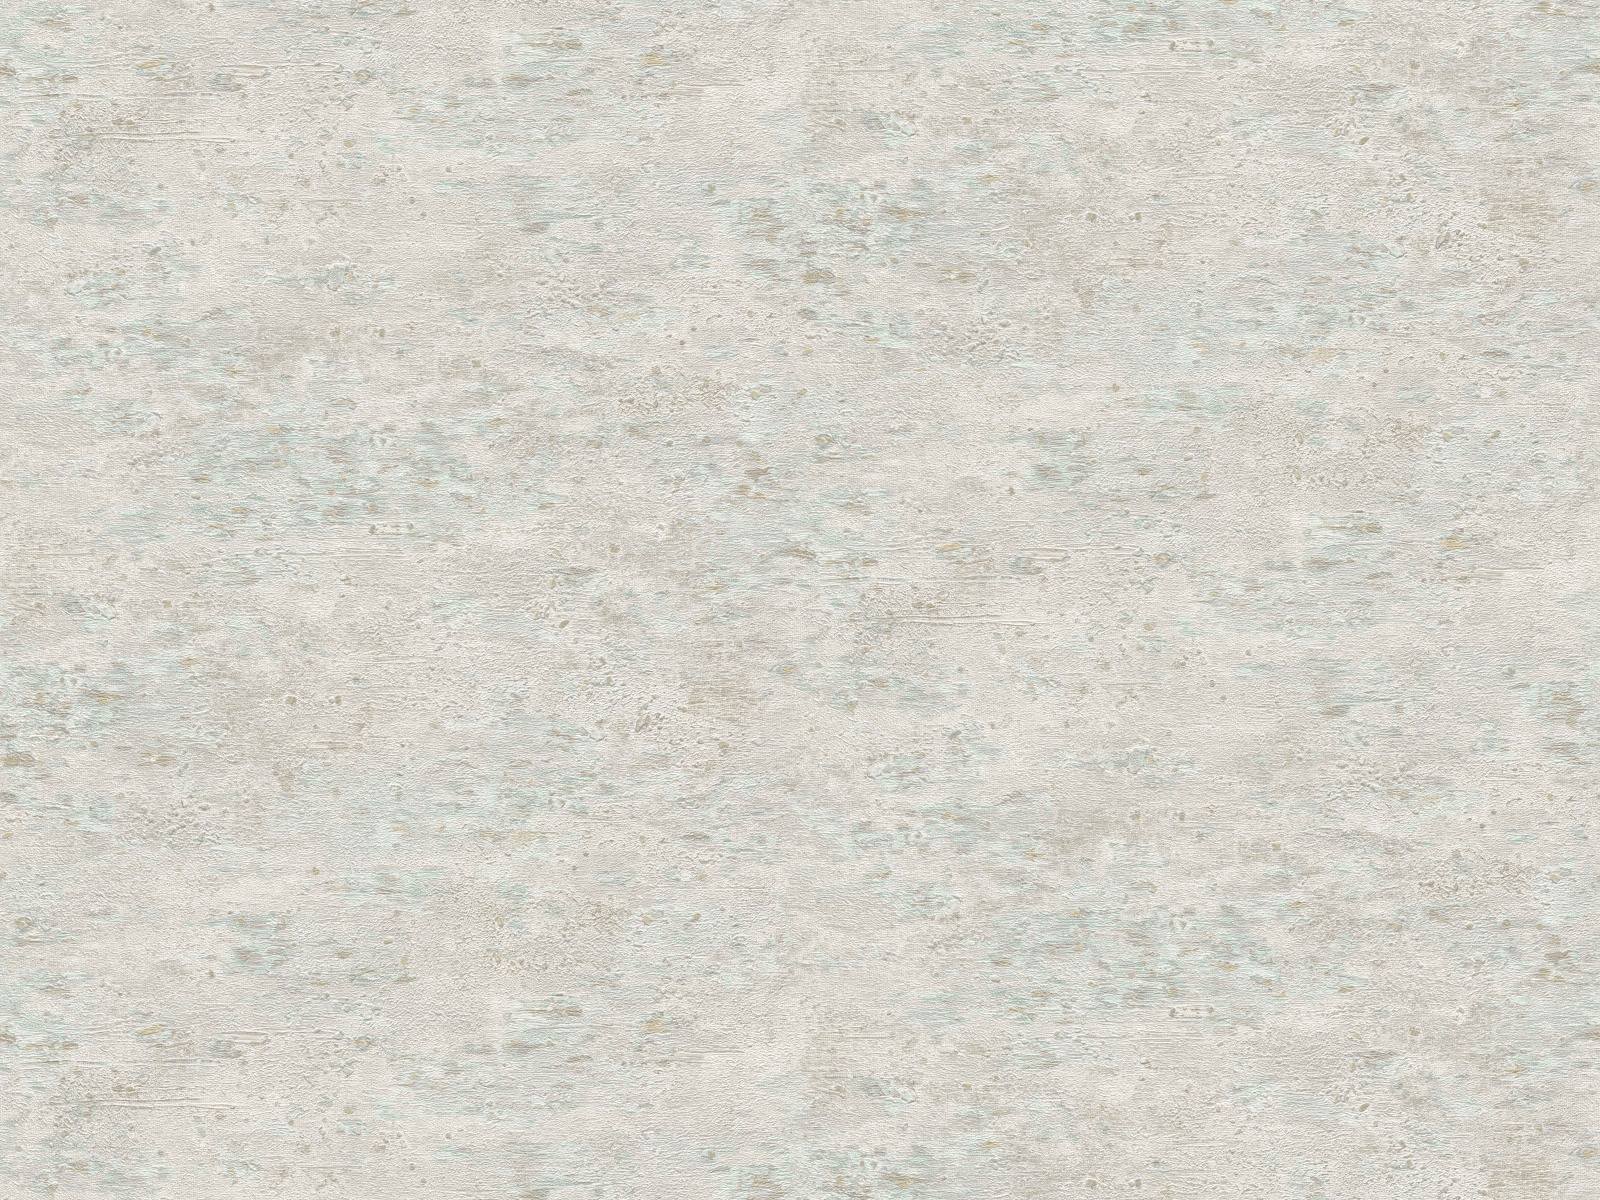 Vliesová tapeta imitujúca vulkanické horniny v béžovo-šedej farbe, ER-601689